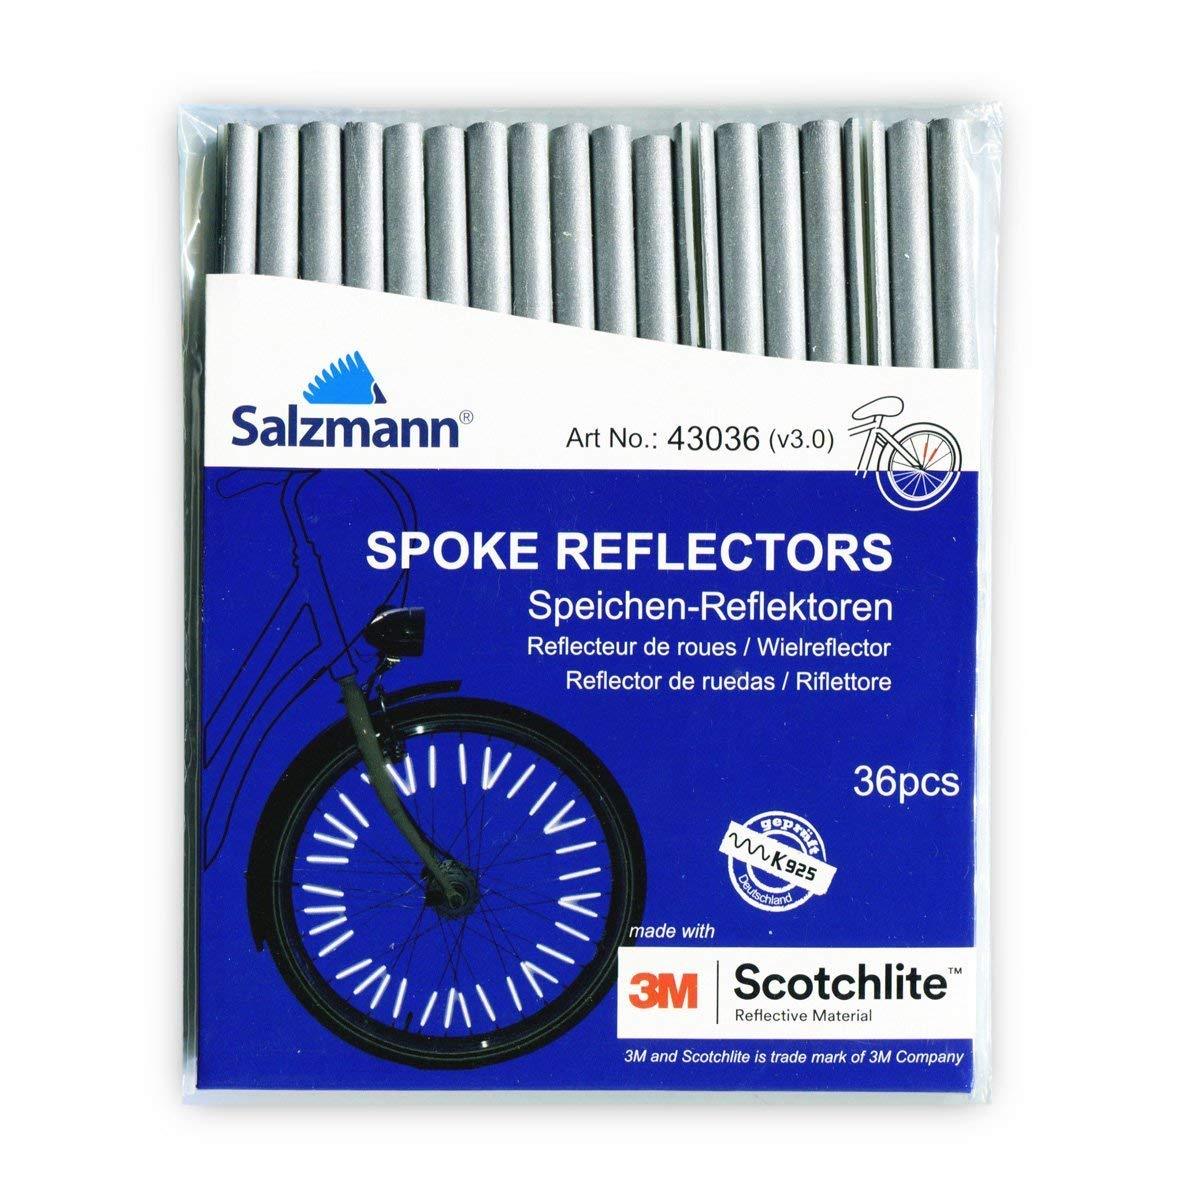 Spoke reflectors in the packaging.